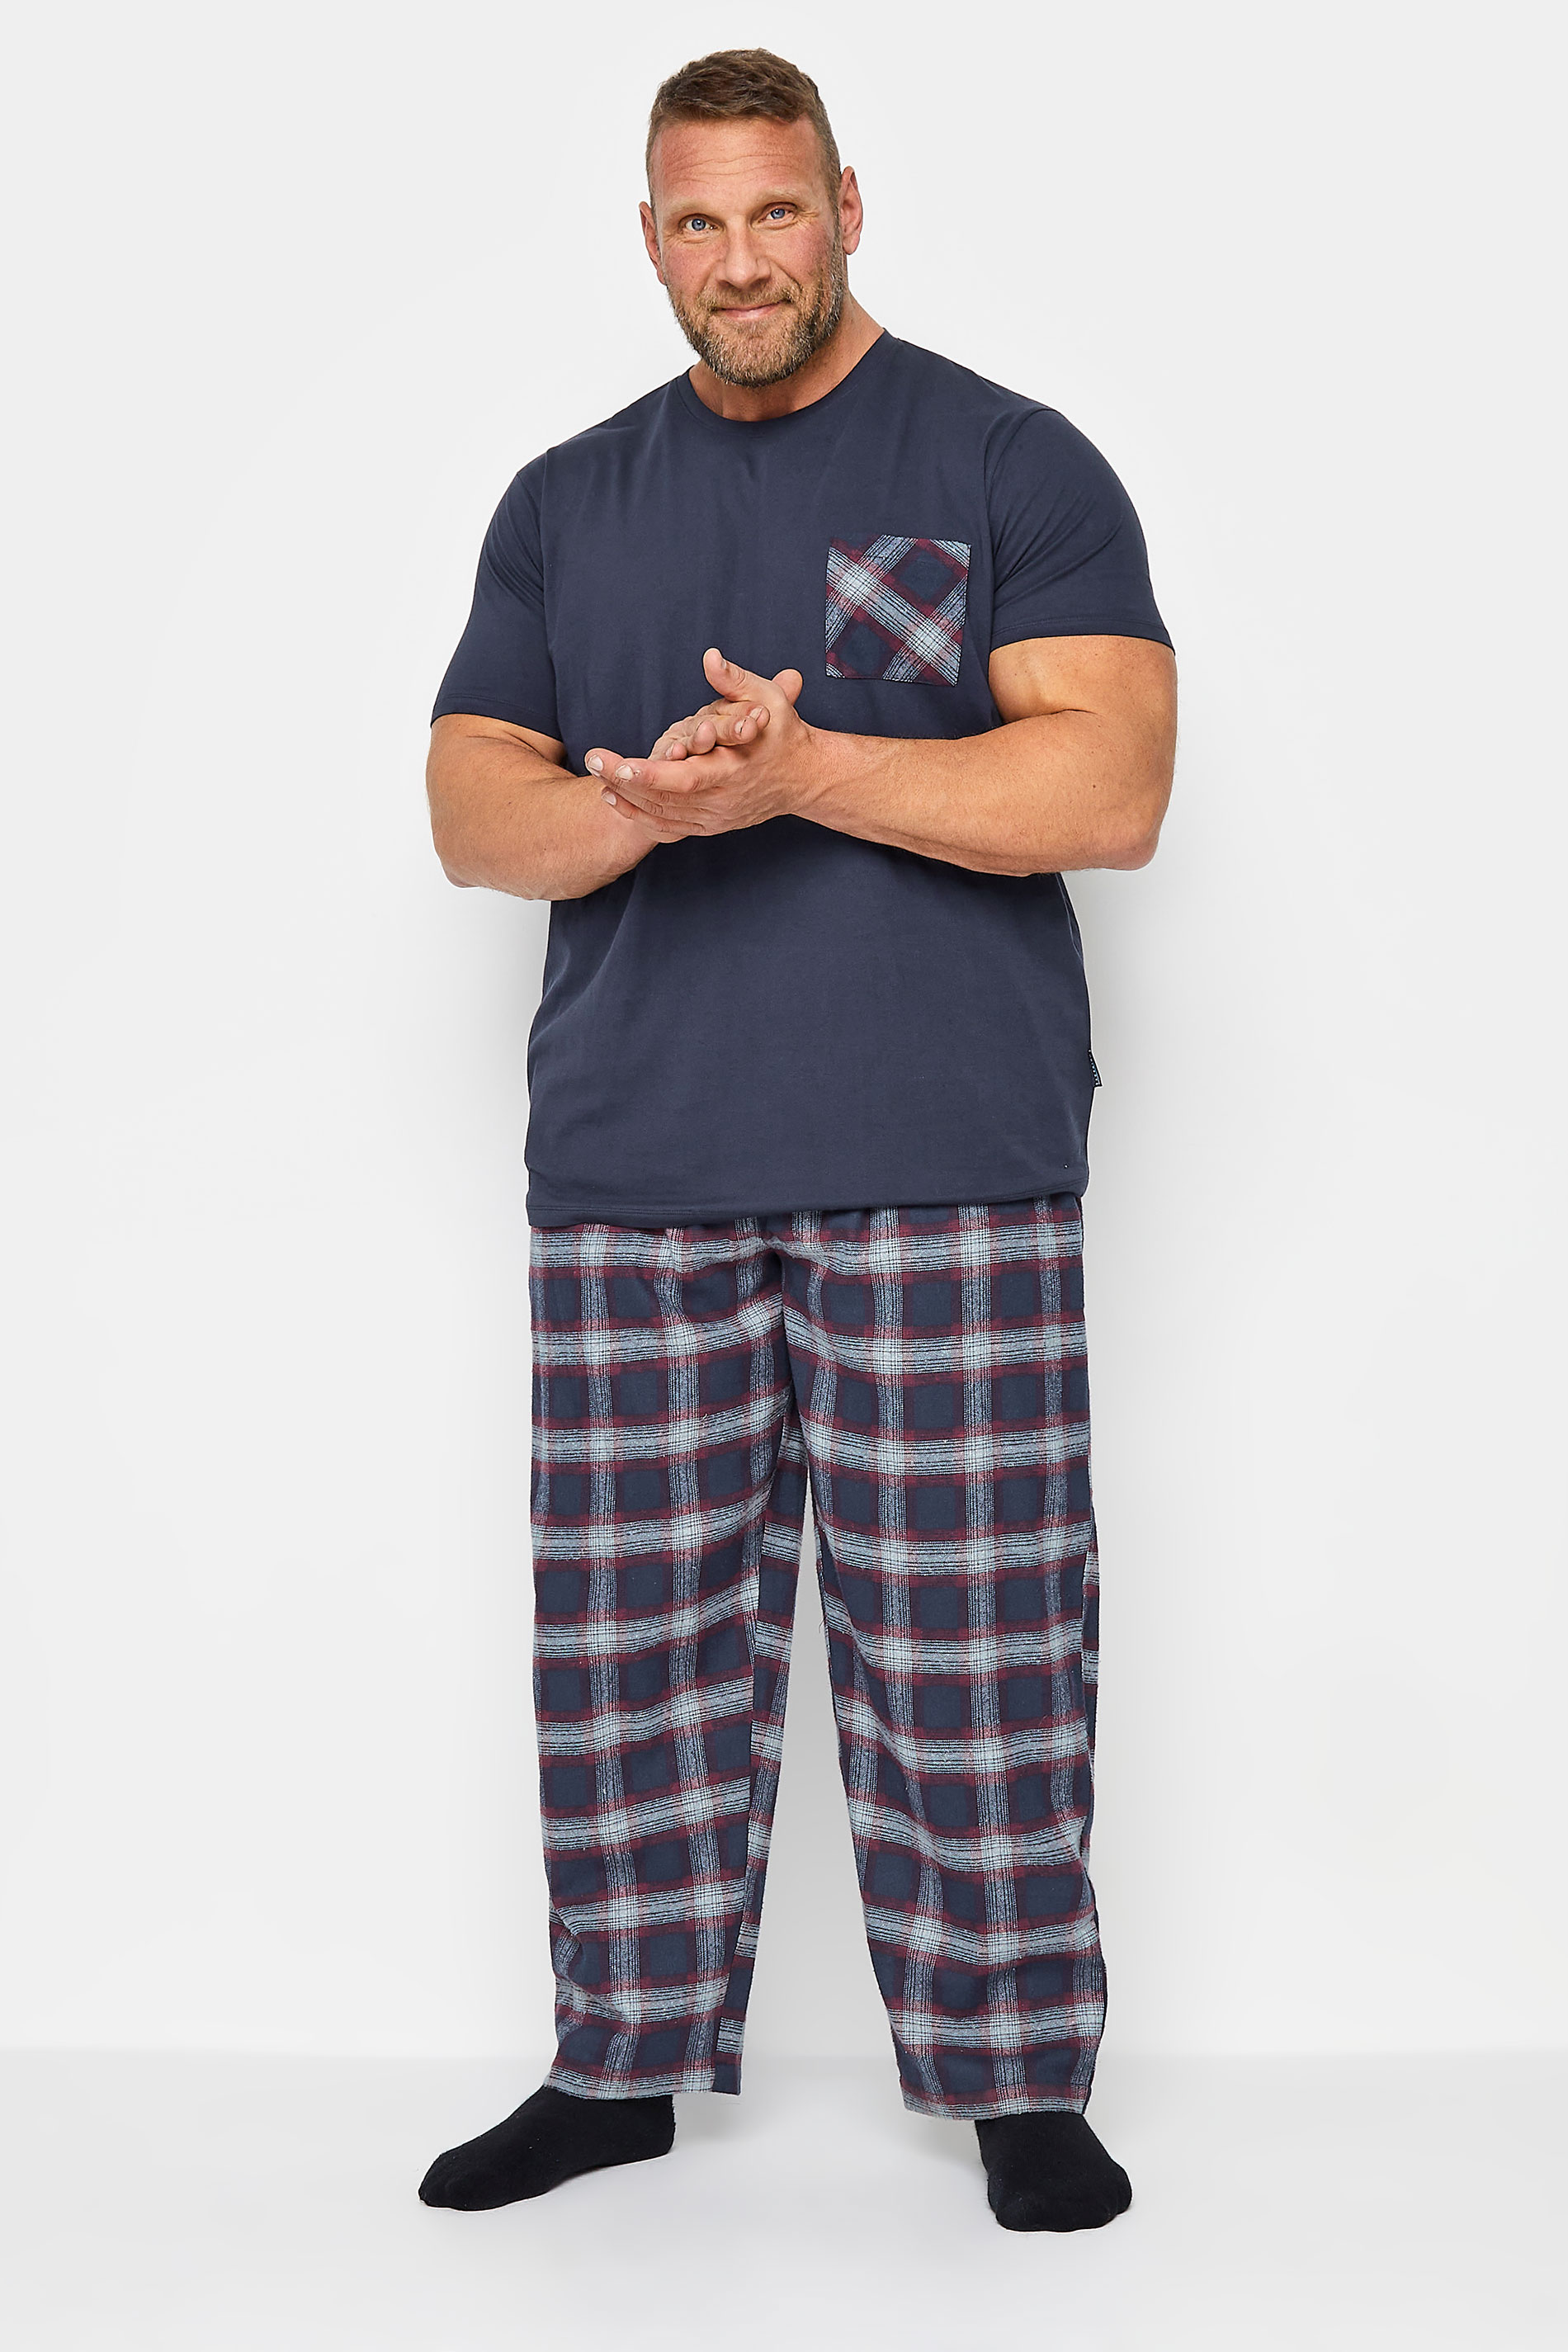 BadRhino Navy and Red T-Shirt and Check Trousers Pyjama Set | BadRhino 1